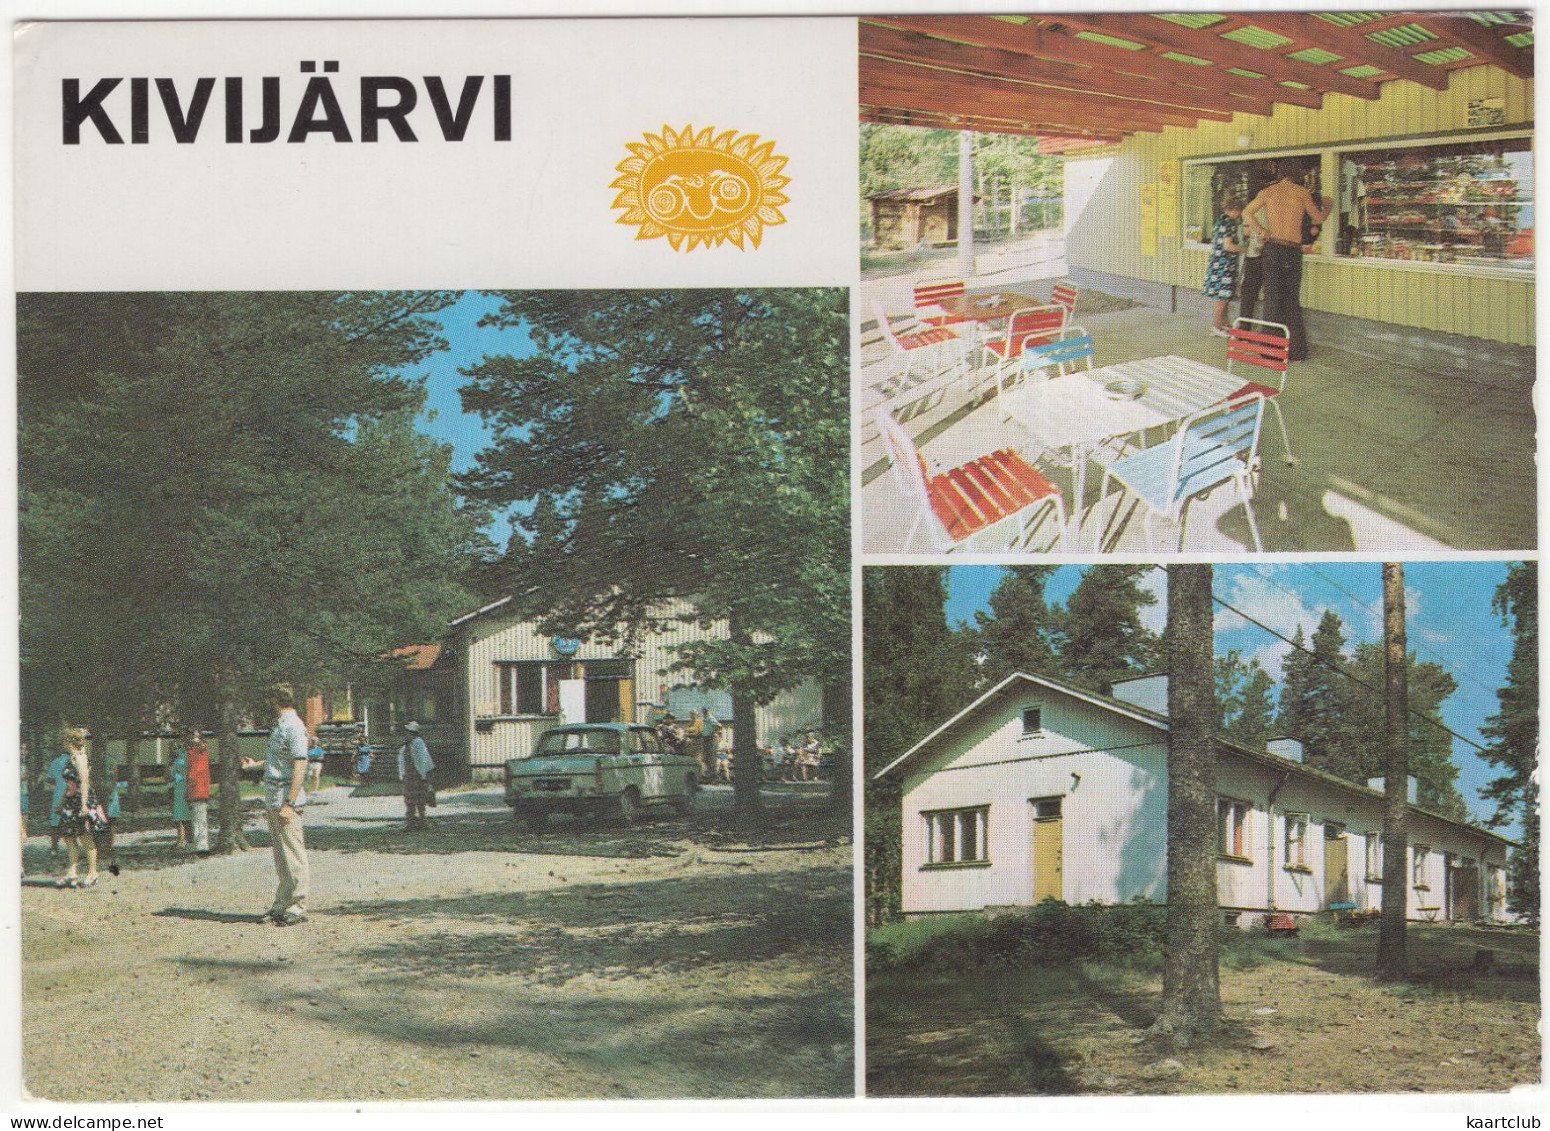 Kivijärvi: PEUGEOT 404 - Lomakylä - (Finland) - PKW